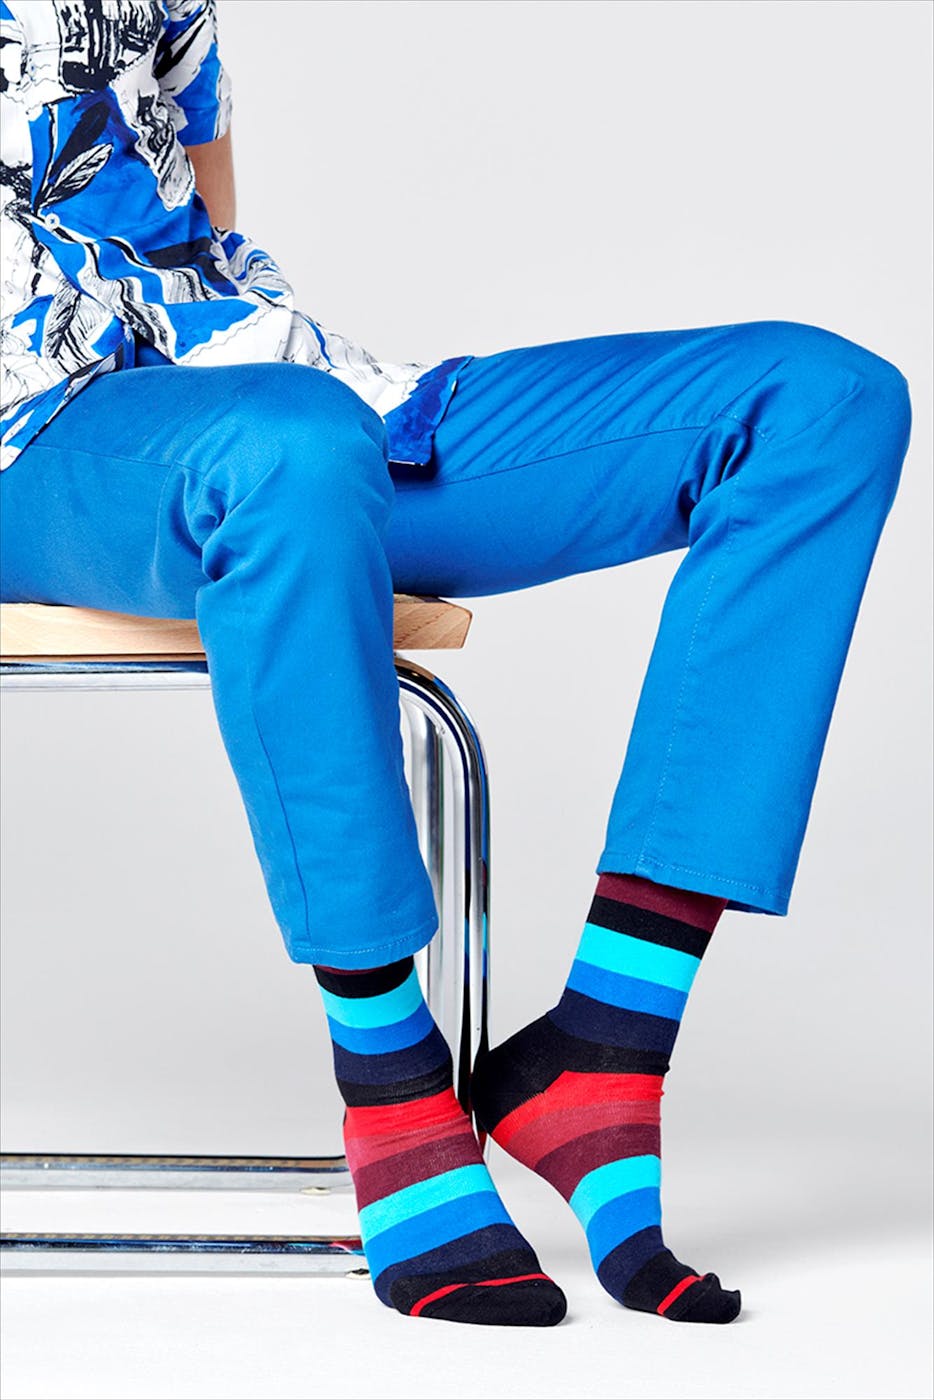 Happy Socks - Blauw-bordeaux-zwarte Stripe sokken, maat: 36-40